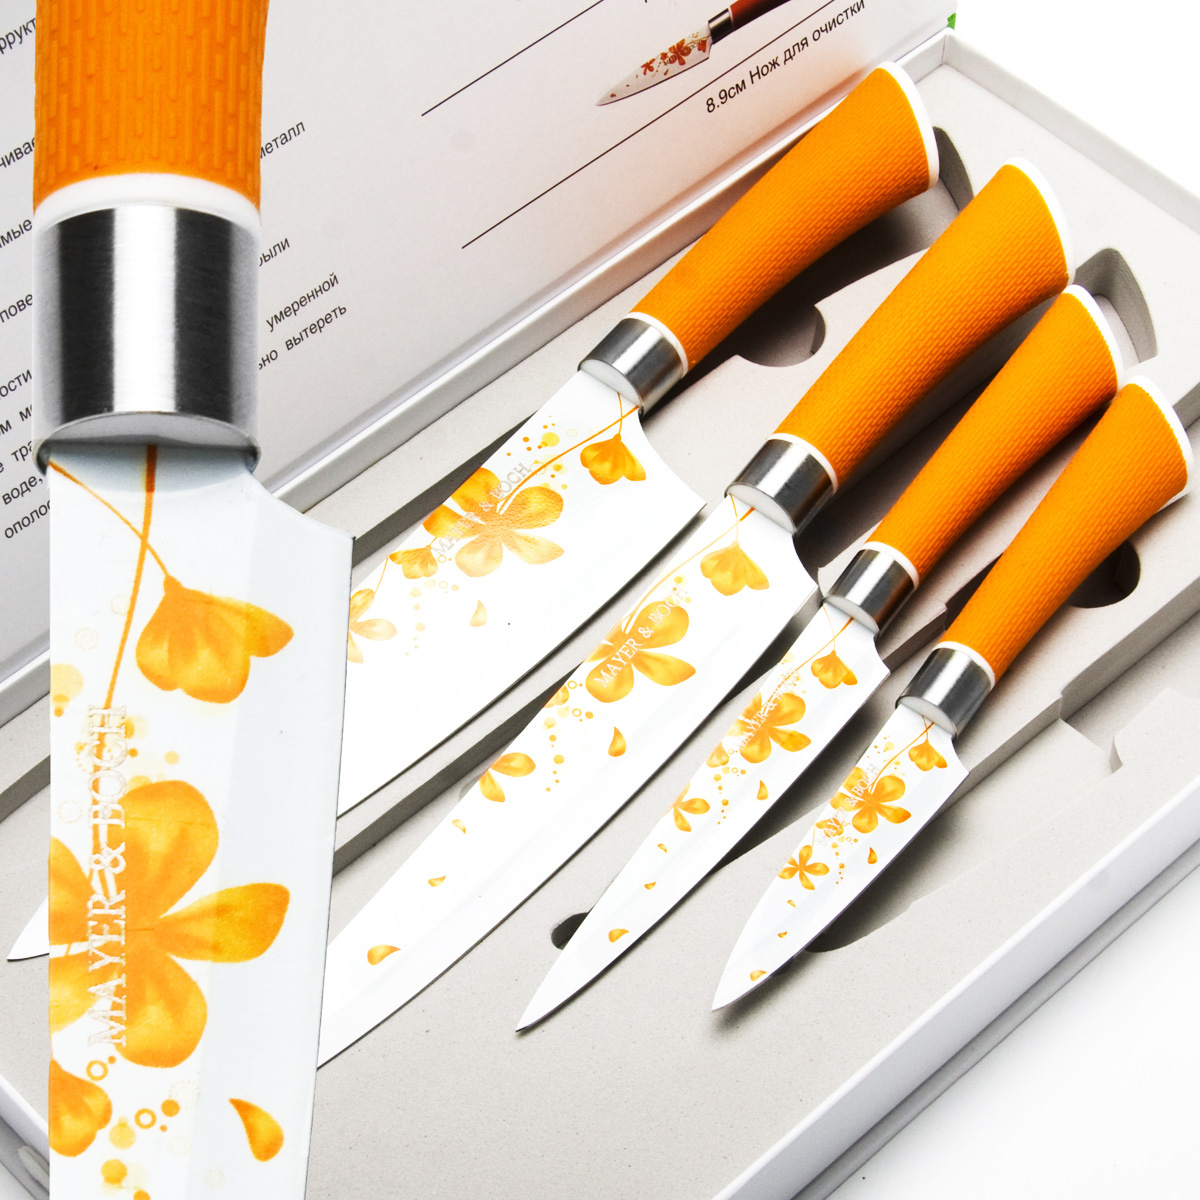  кухонных ножей Mayer&Boch, Нержавеющая сталь, 4 предметов  .